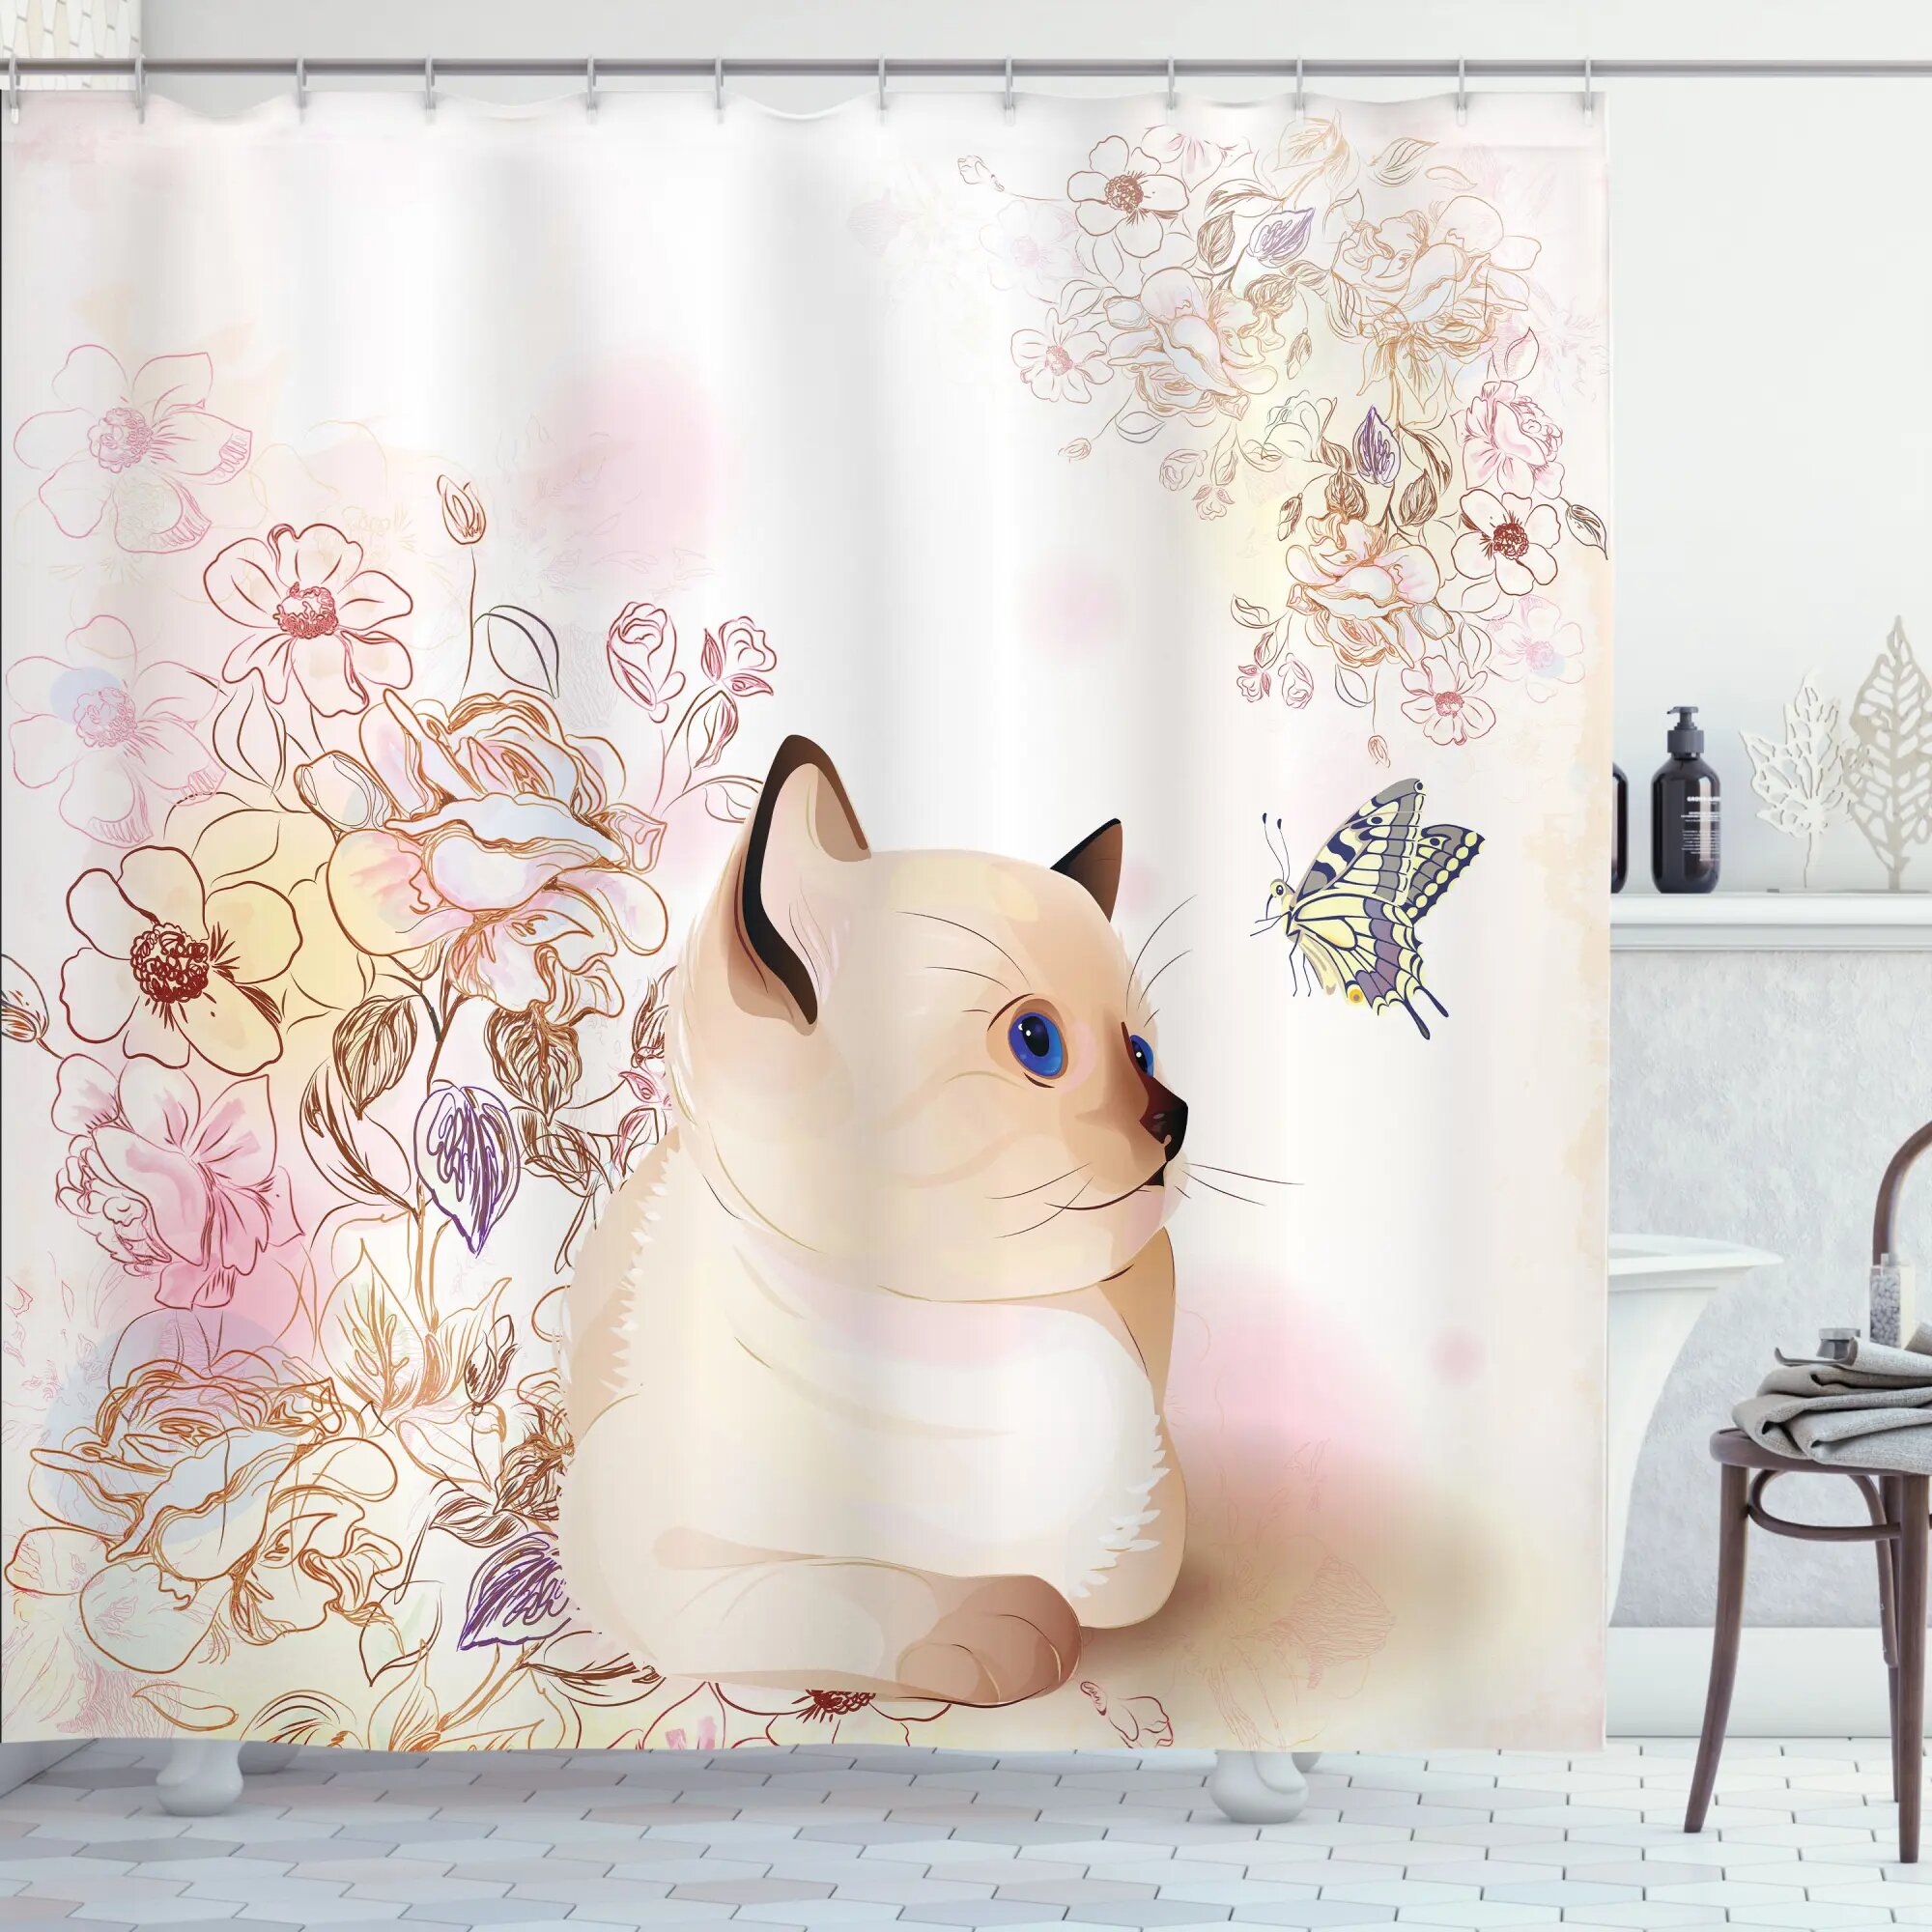 Cute Hello Kitty Shower Curtain Bathtub Bathroom Toilet Cover Mat